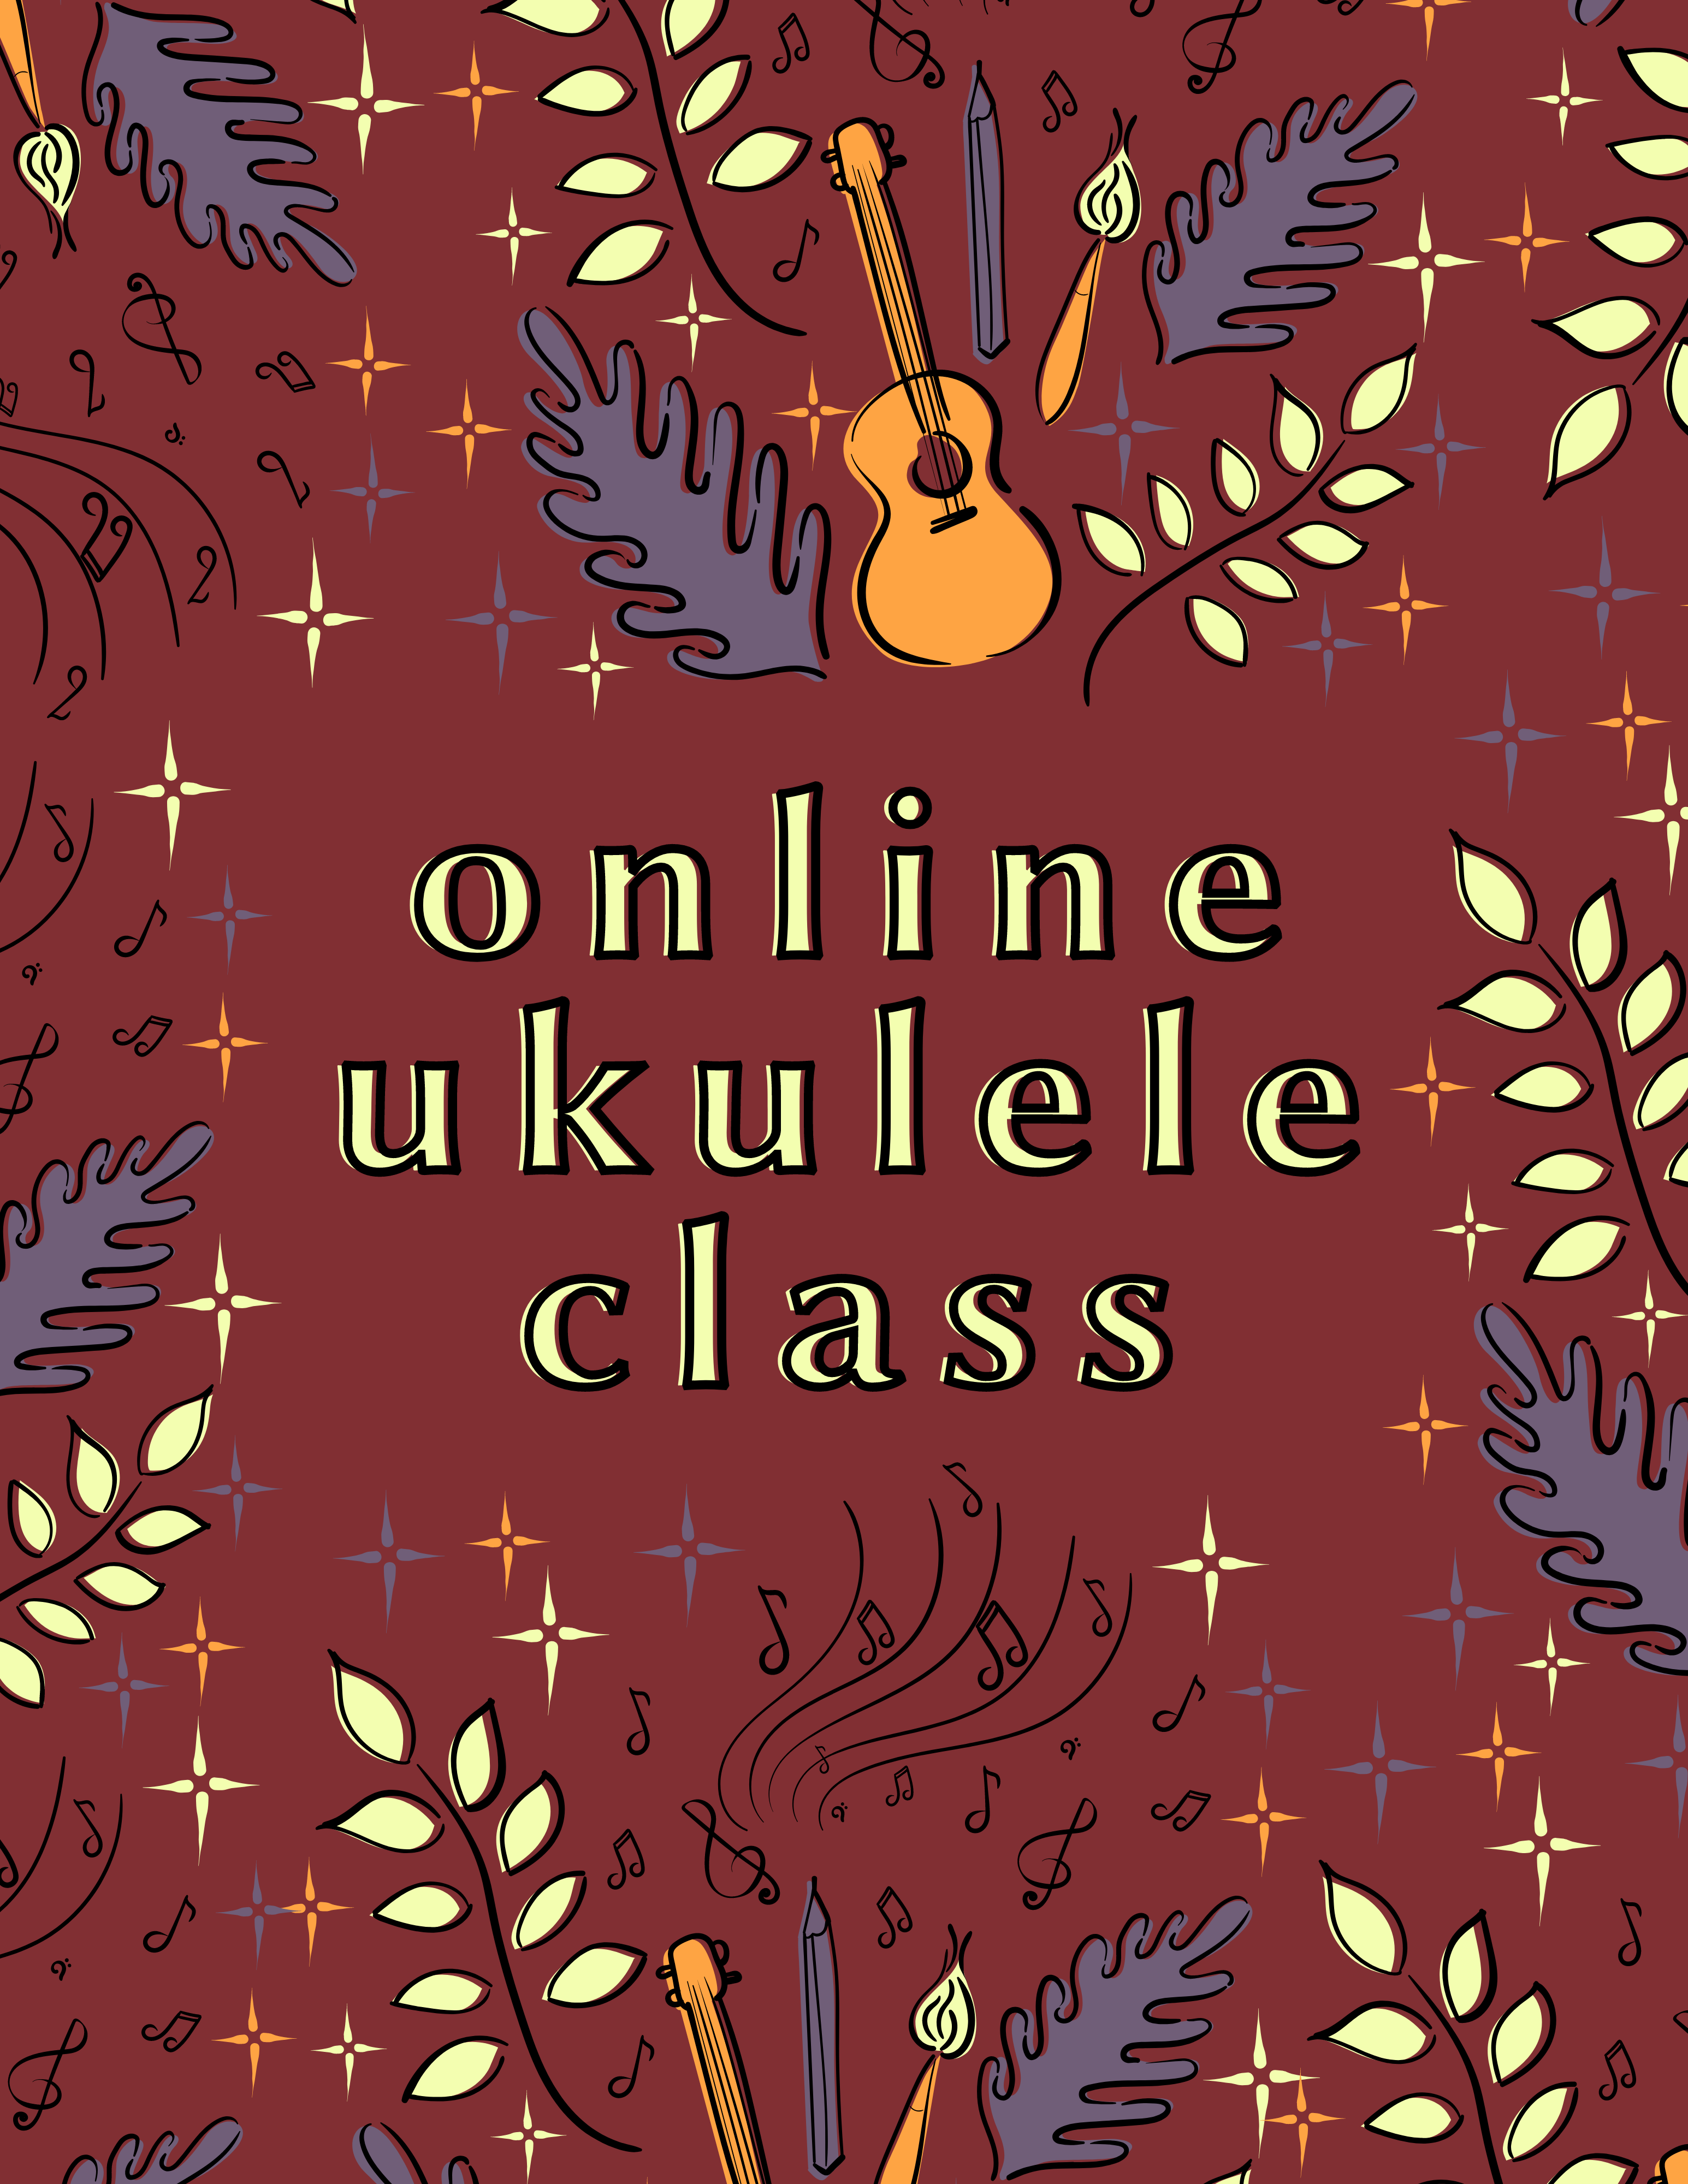 Illustration of ukulele and foliage surrounds the words Online Ukulele Class